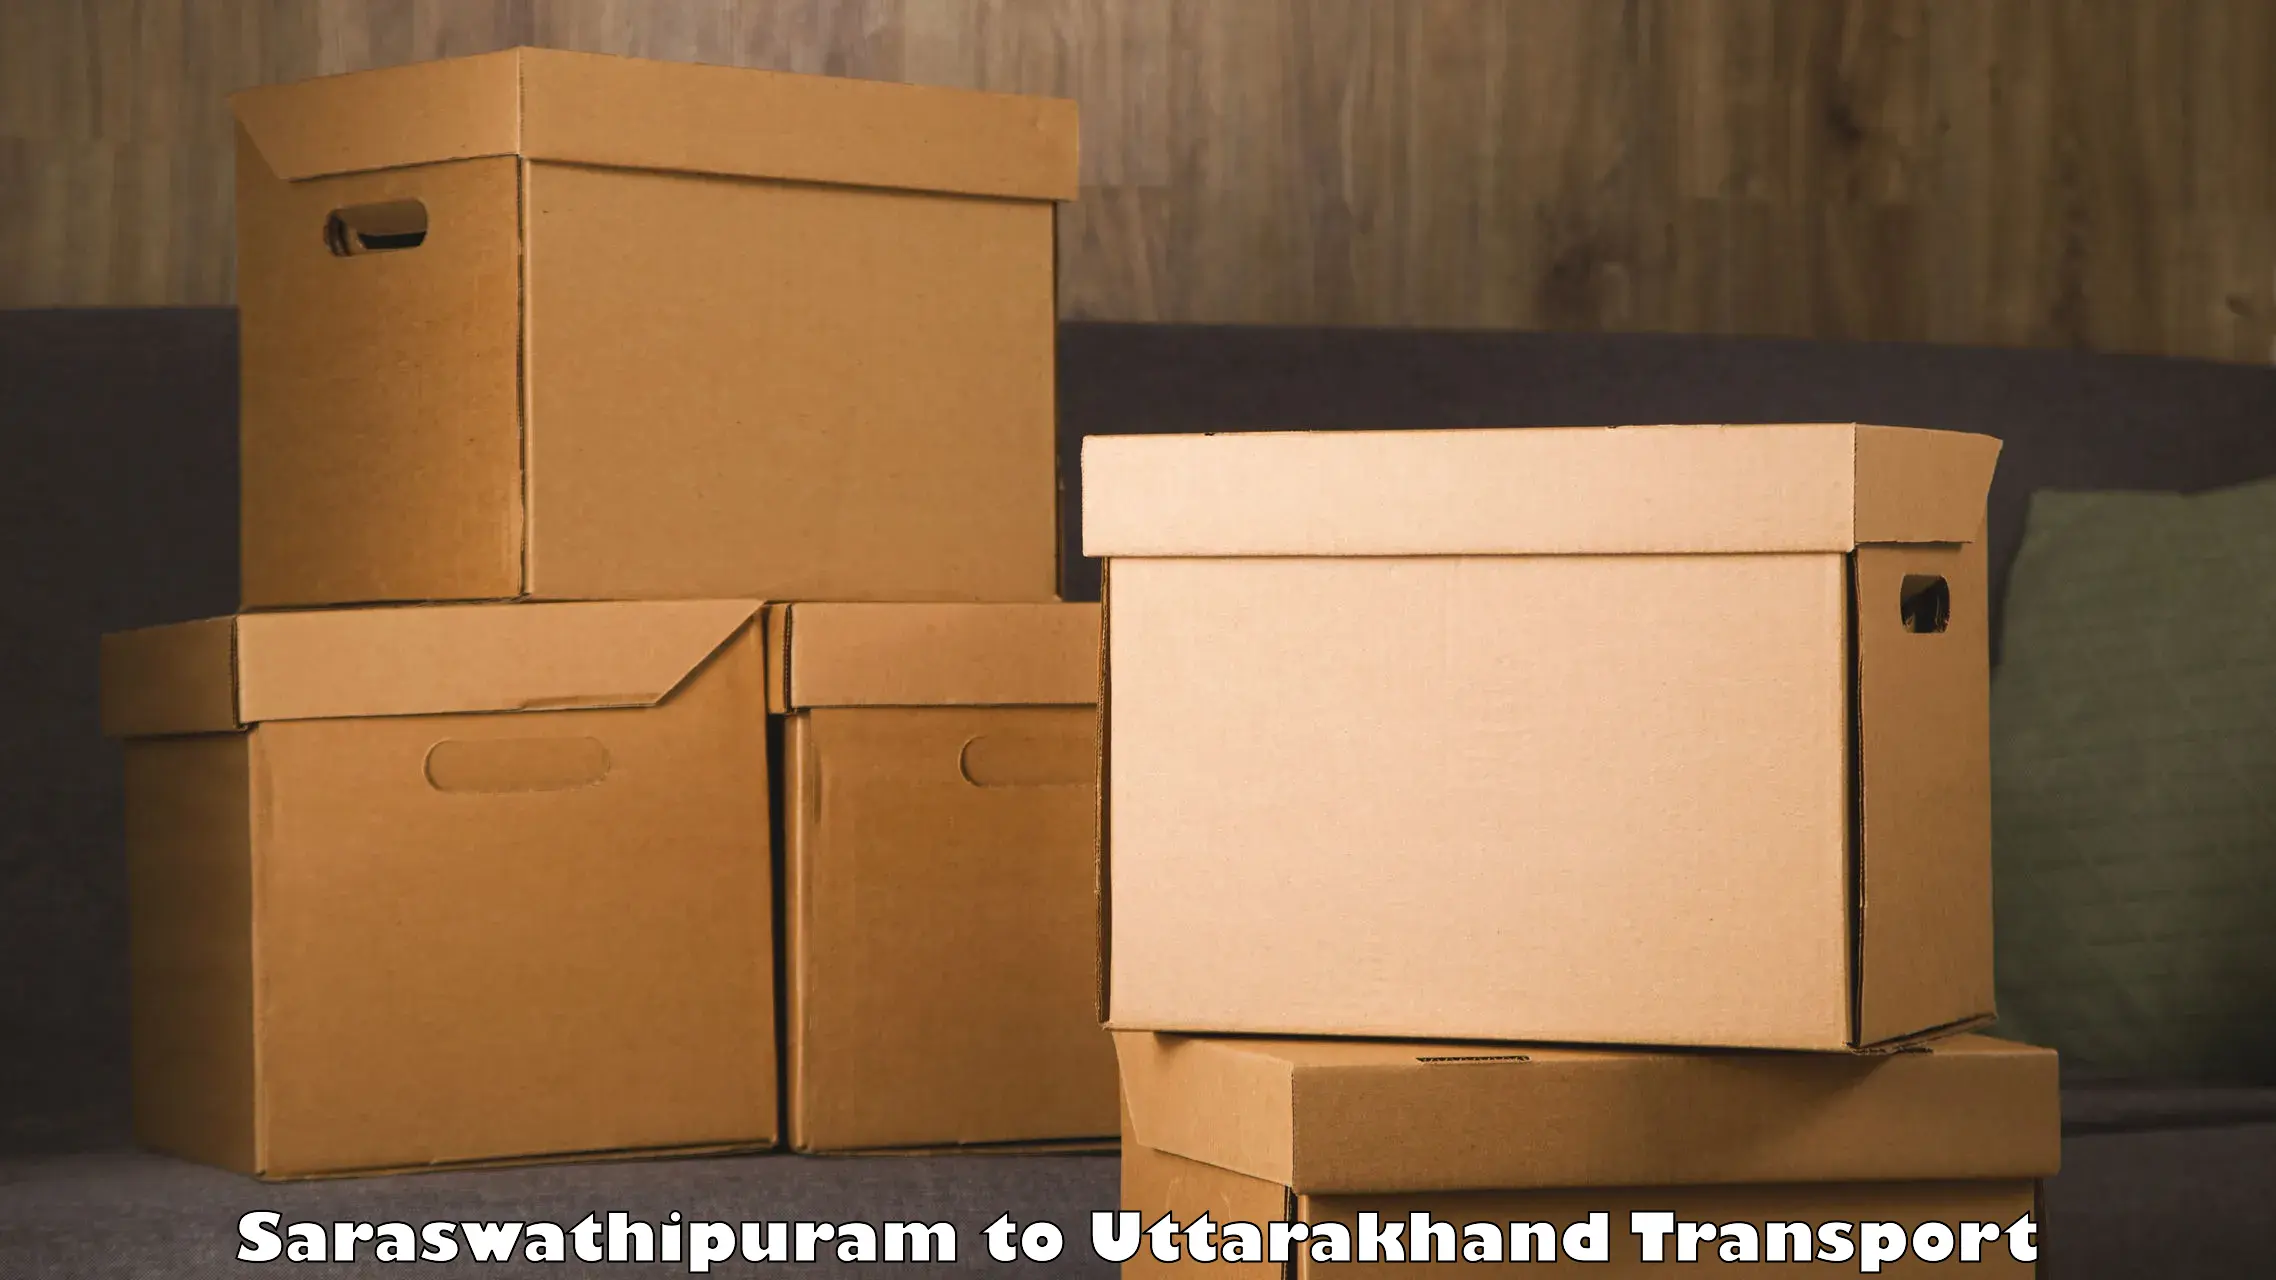 Two wheeler parcel service Saraswathipuram to Kotdwara